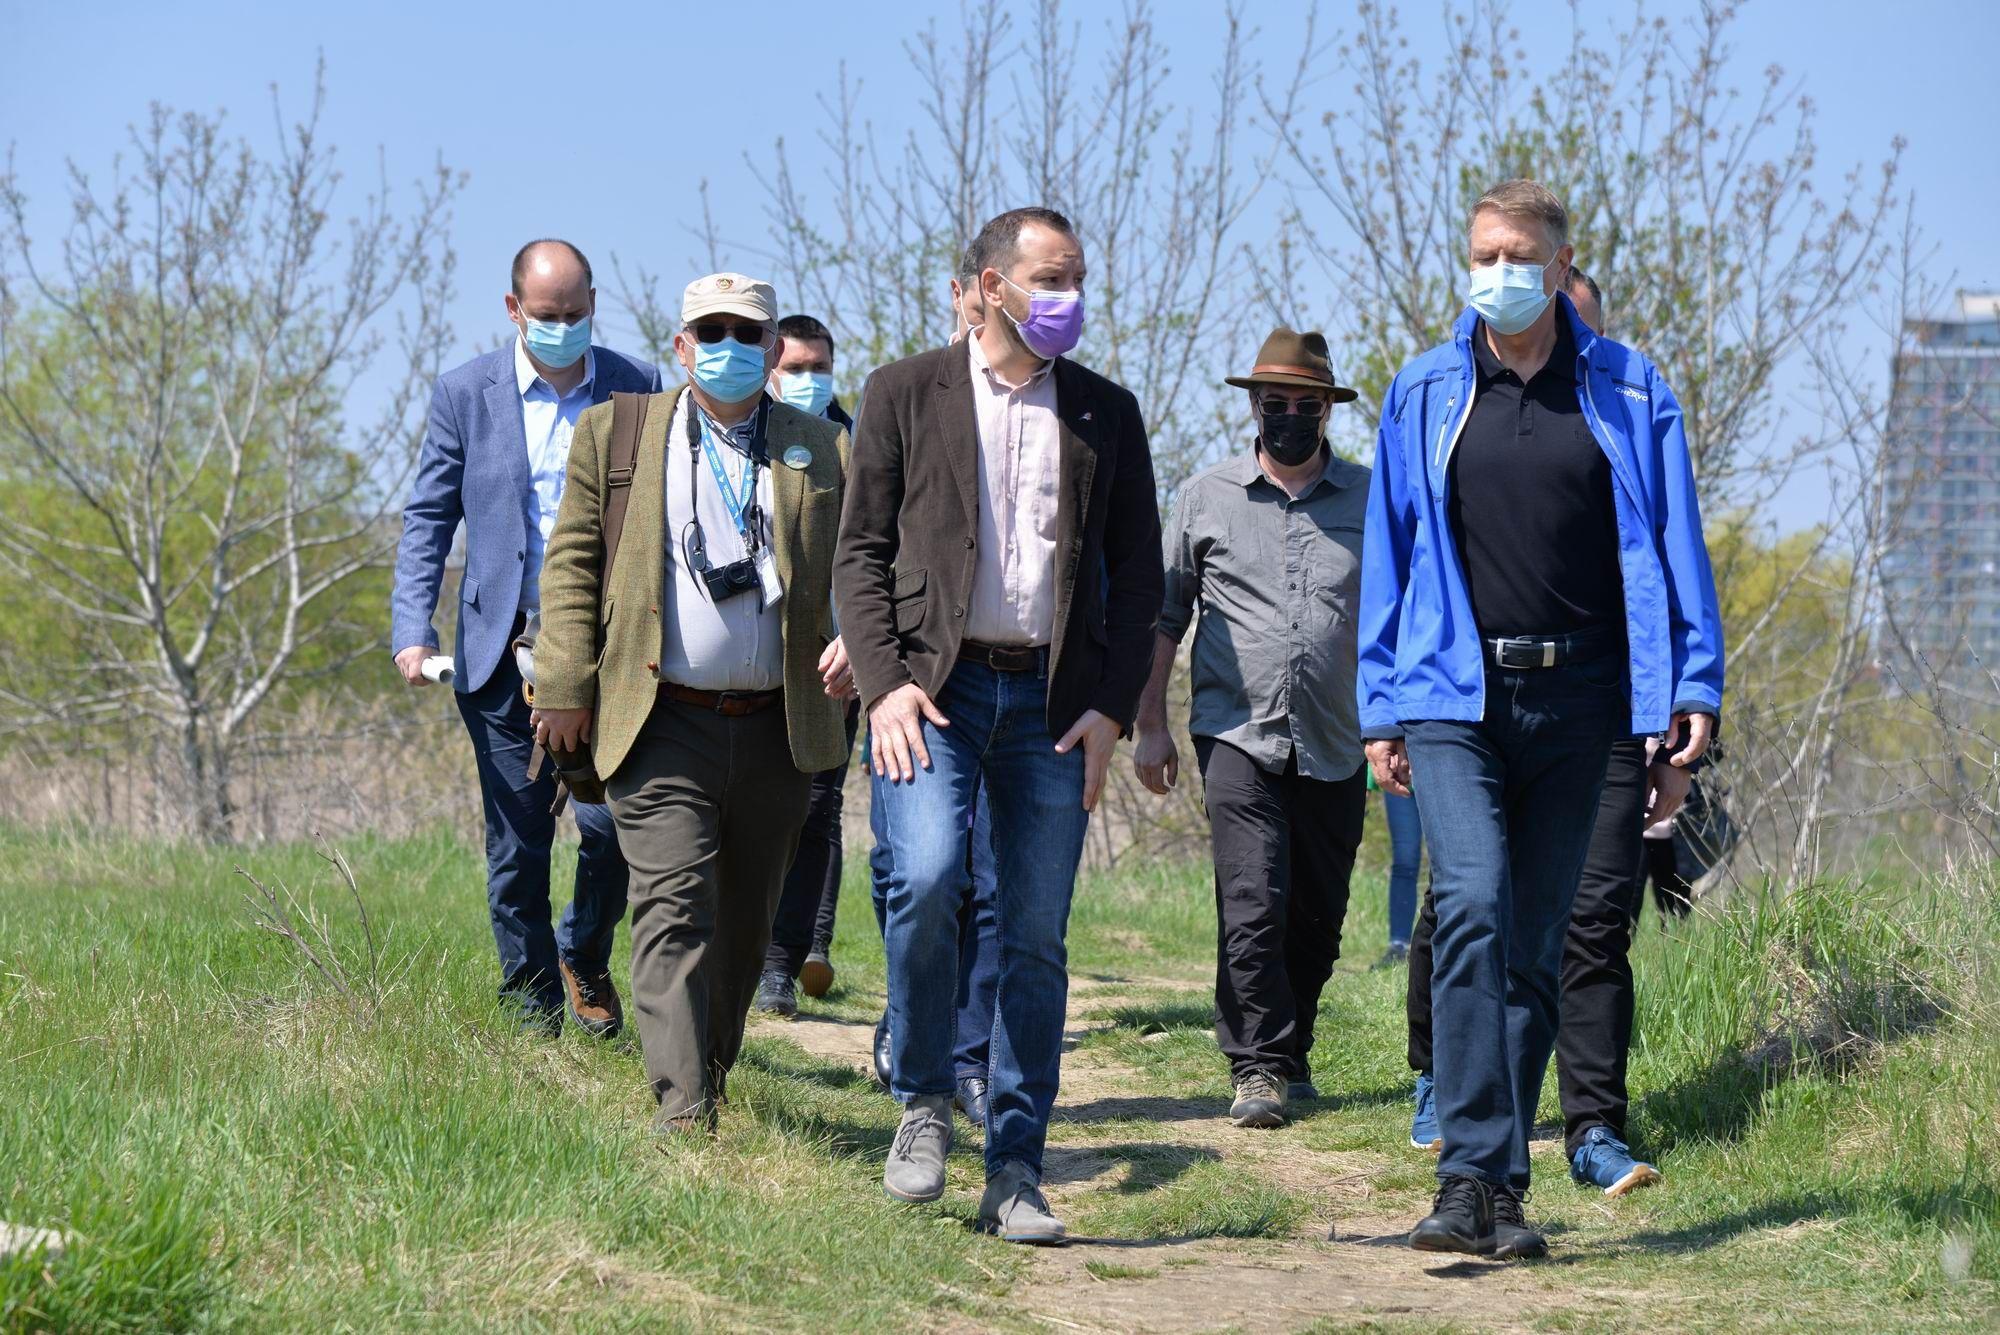 Președintele României, Klaus Iohannis, însoțit de Ministrul Mediului Tánczos Barna, au făcut o vizită  în Parcul Natural Văcărești, cu ocazia Zilei Pământului, joi, 22 aprilie 2021, ocazie cu care Președintele a acordat Înaltul Patronaj acestui parc. Foto: Lucian Muntean